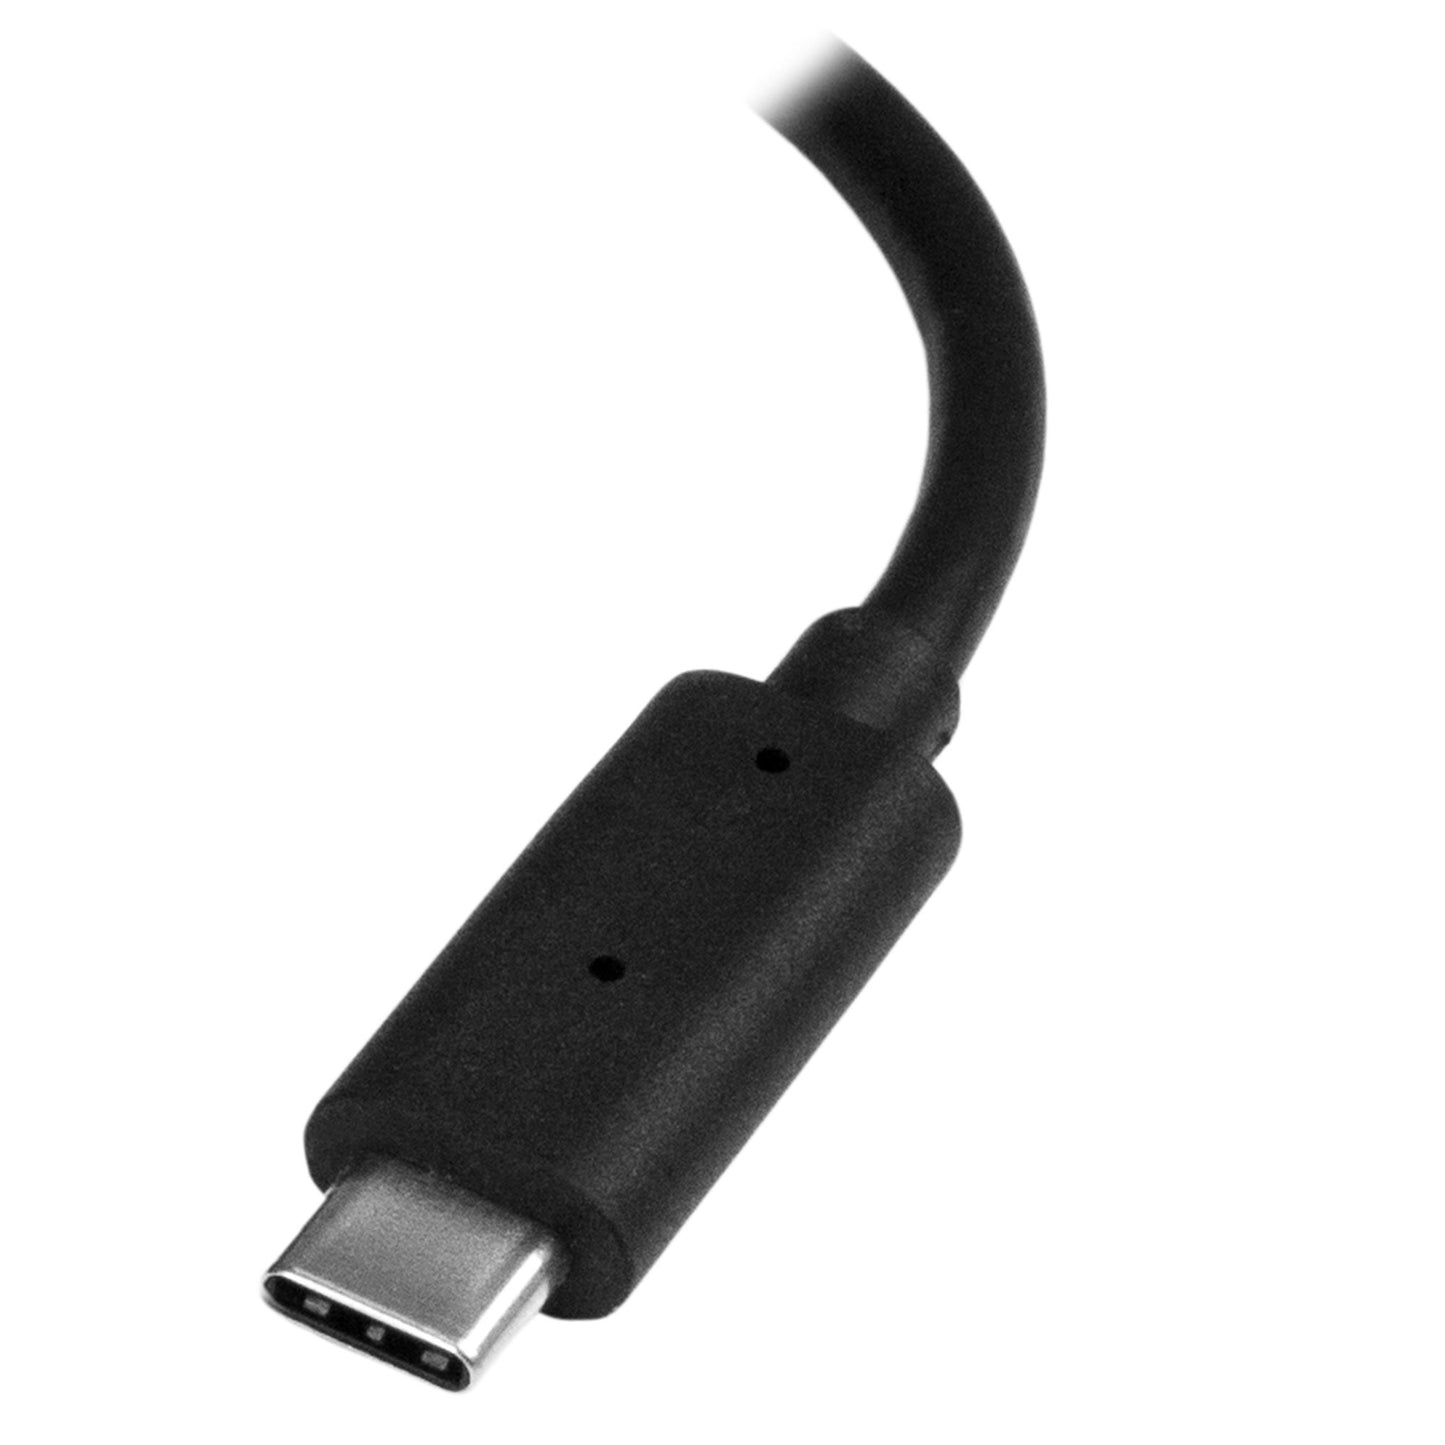 Adaptador de Video Externo USB-C a HDMI STARTECH - Convertidor USB Tipo C a HDMI 4K 60Hz con Interruptor de Modo de Presentación, color negro